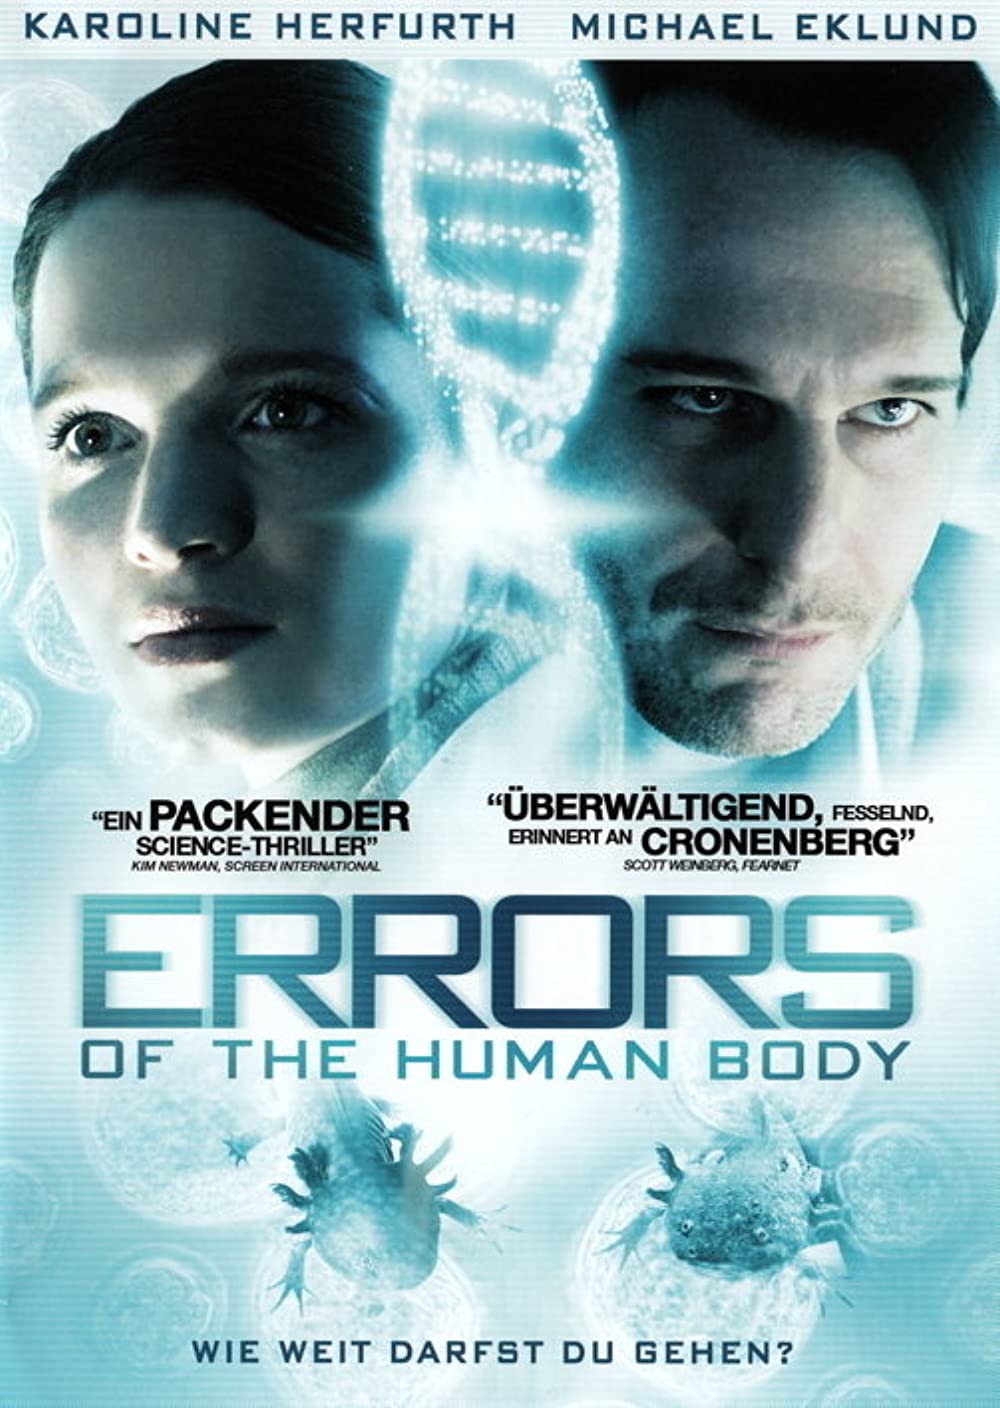 ดูหนังออนไลน์ฟรี Errors of the Human Body (2012) ข้อผิดพลาดของร่างกายมนุษย์ หนังเต็มเรื่อง หนังมาสเตอร์ ดูหนังHD ดูหนังออนไลน์ ดูหนังใหม่